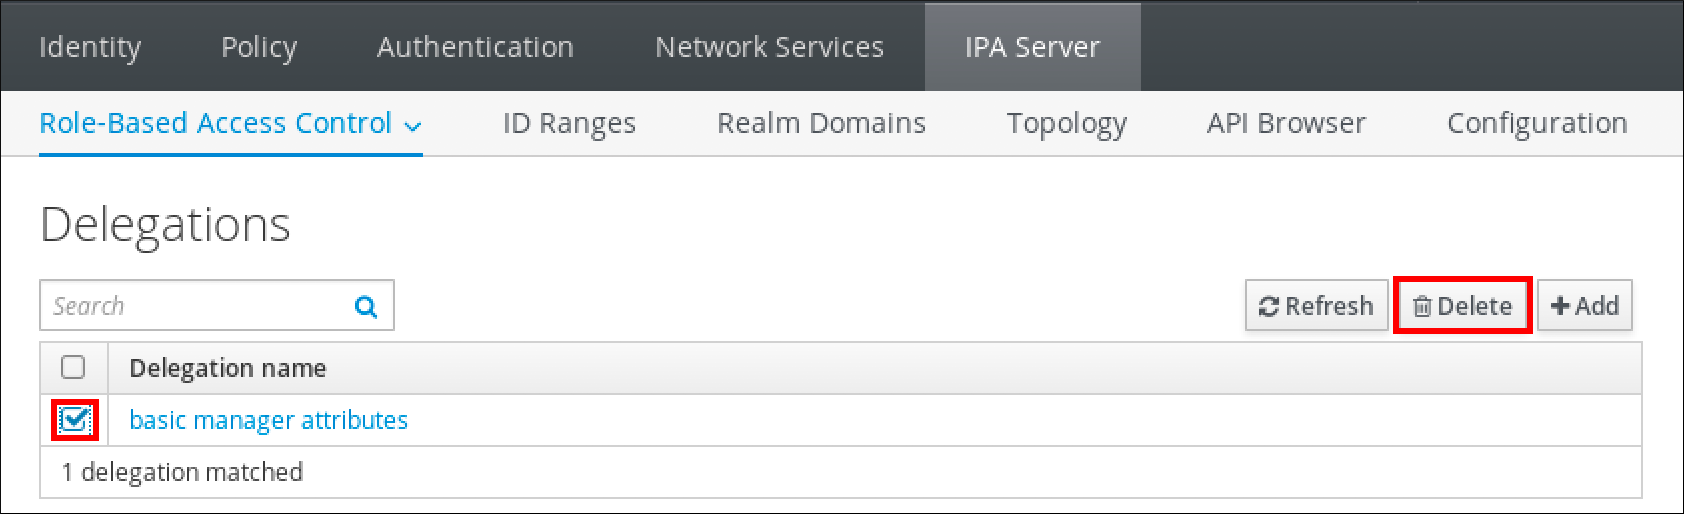 "IPA Server" タブの "Role-Based Access Control" サブメニューのスクリーンショット。委譲ページには委譲名の表と Basic manager attributes エントリーにチェックが入ったチェックボックスが表示されています。Delete ボタンが強調表示されています。